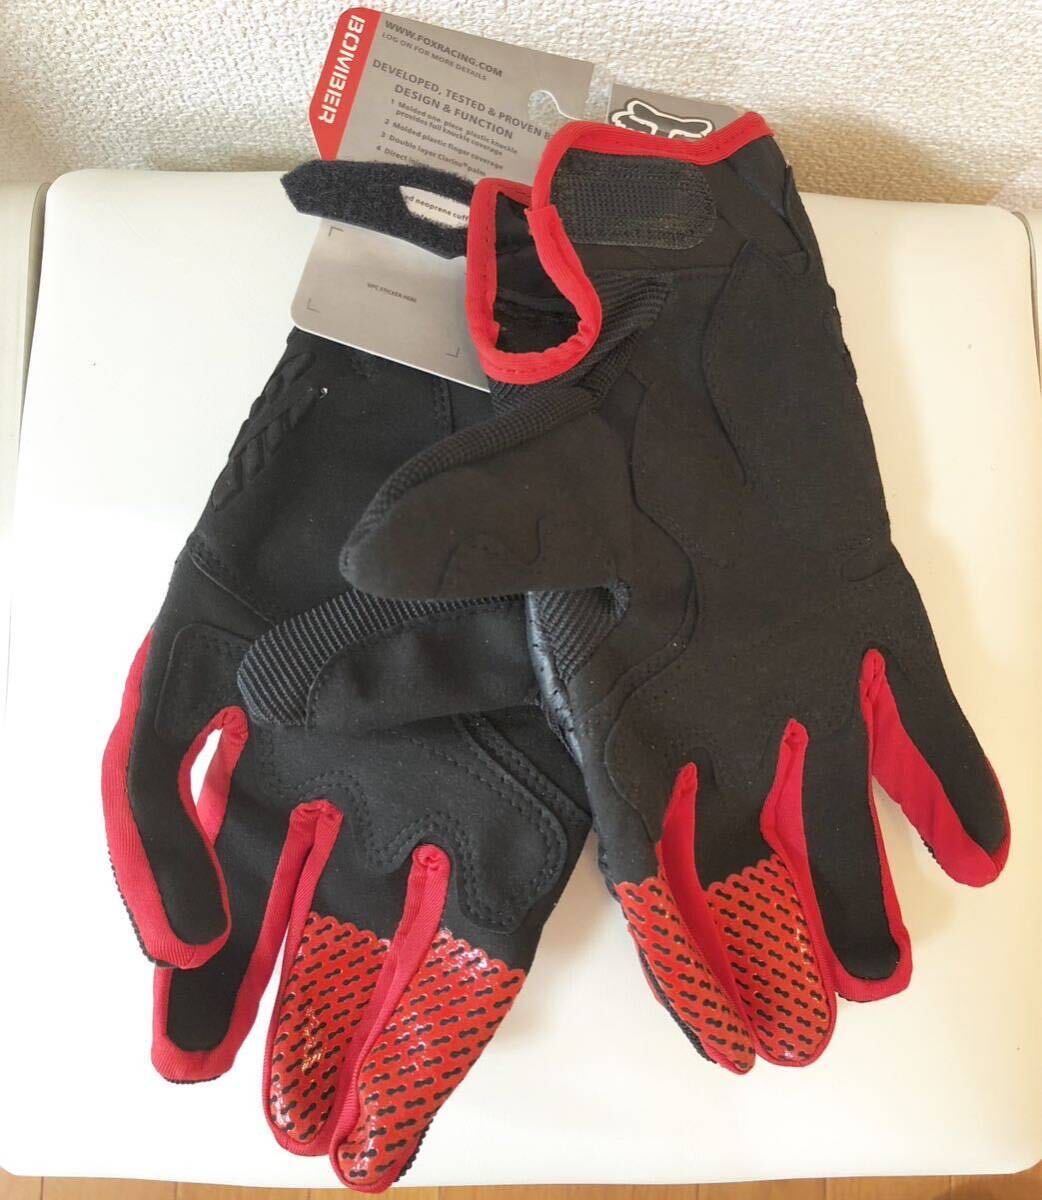 グローブ 手袋 メッシュ バイクグローブ 新品 送料無料 黒赤 Lサイズの画像2